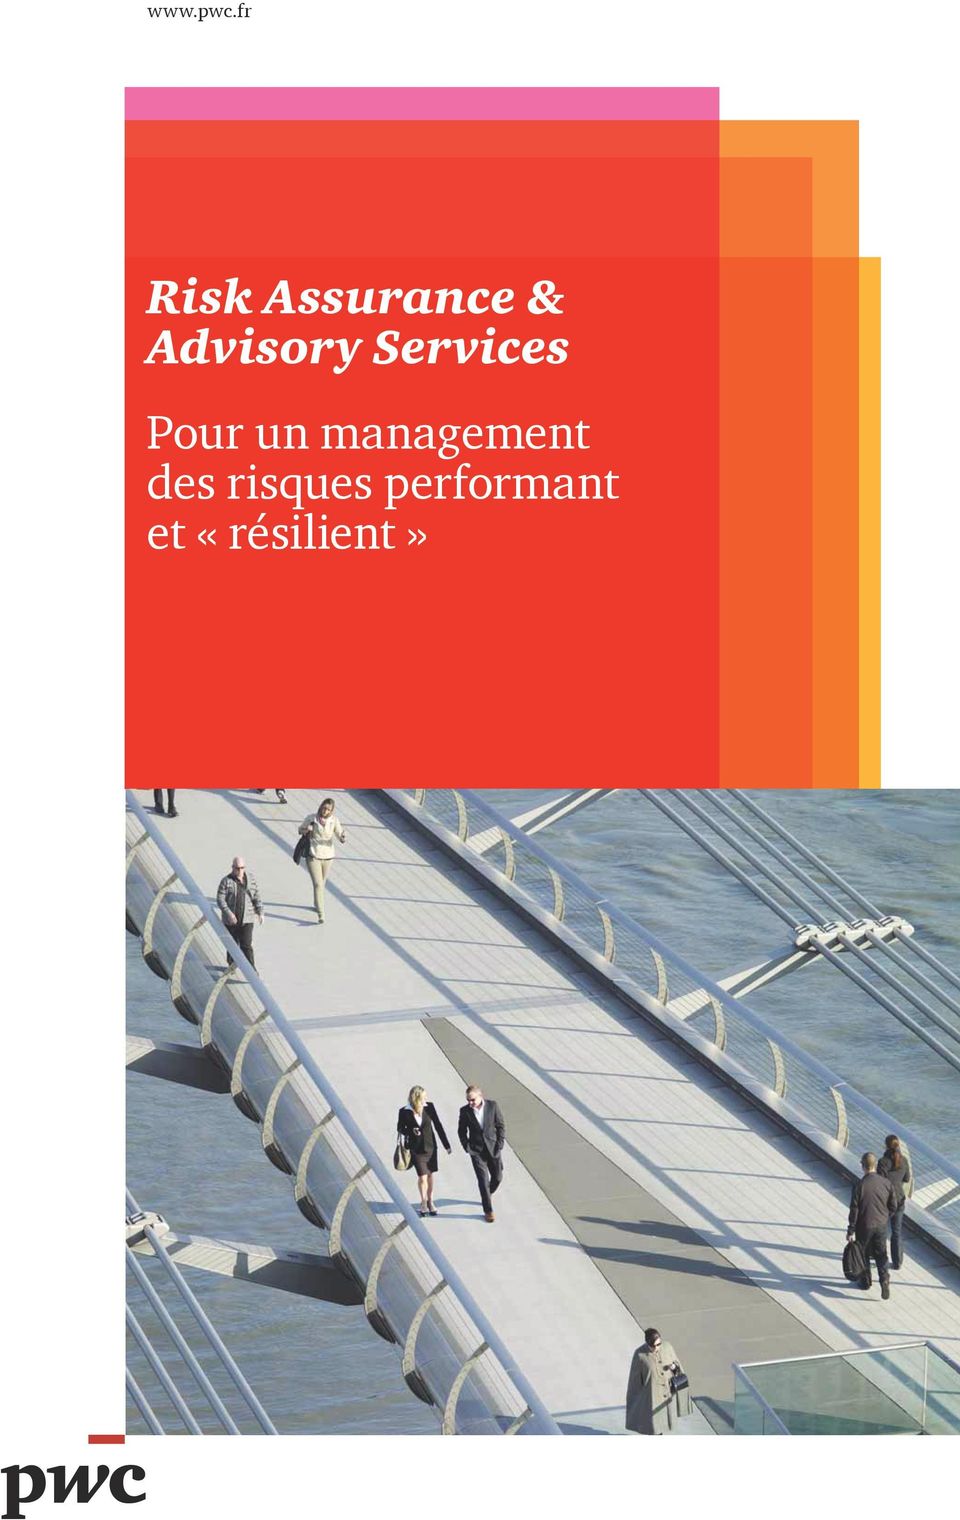 Advisory Services Pour un